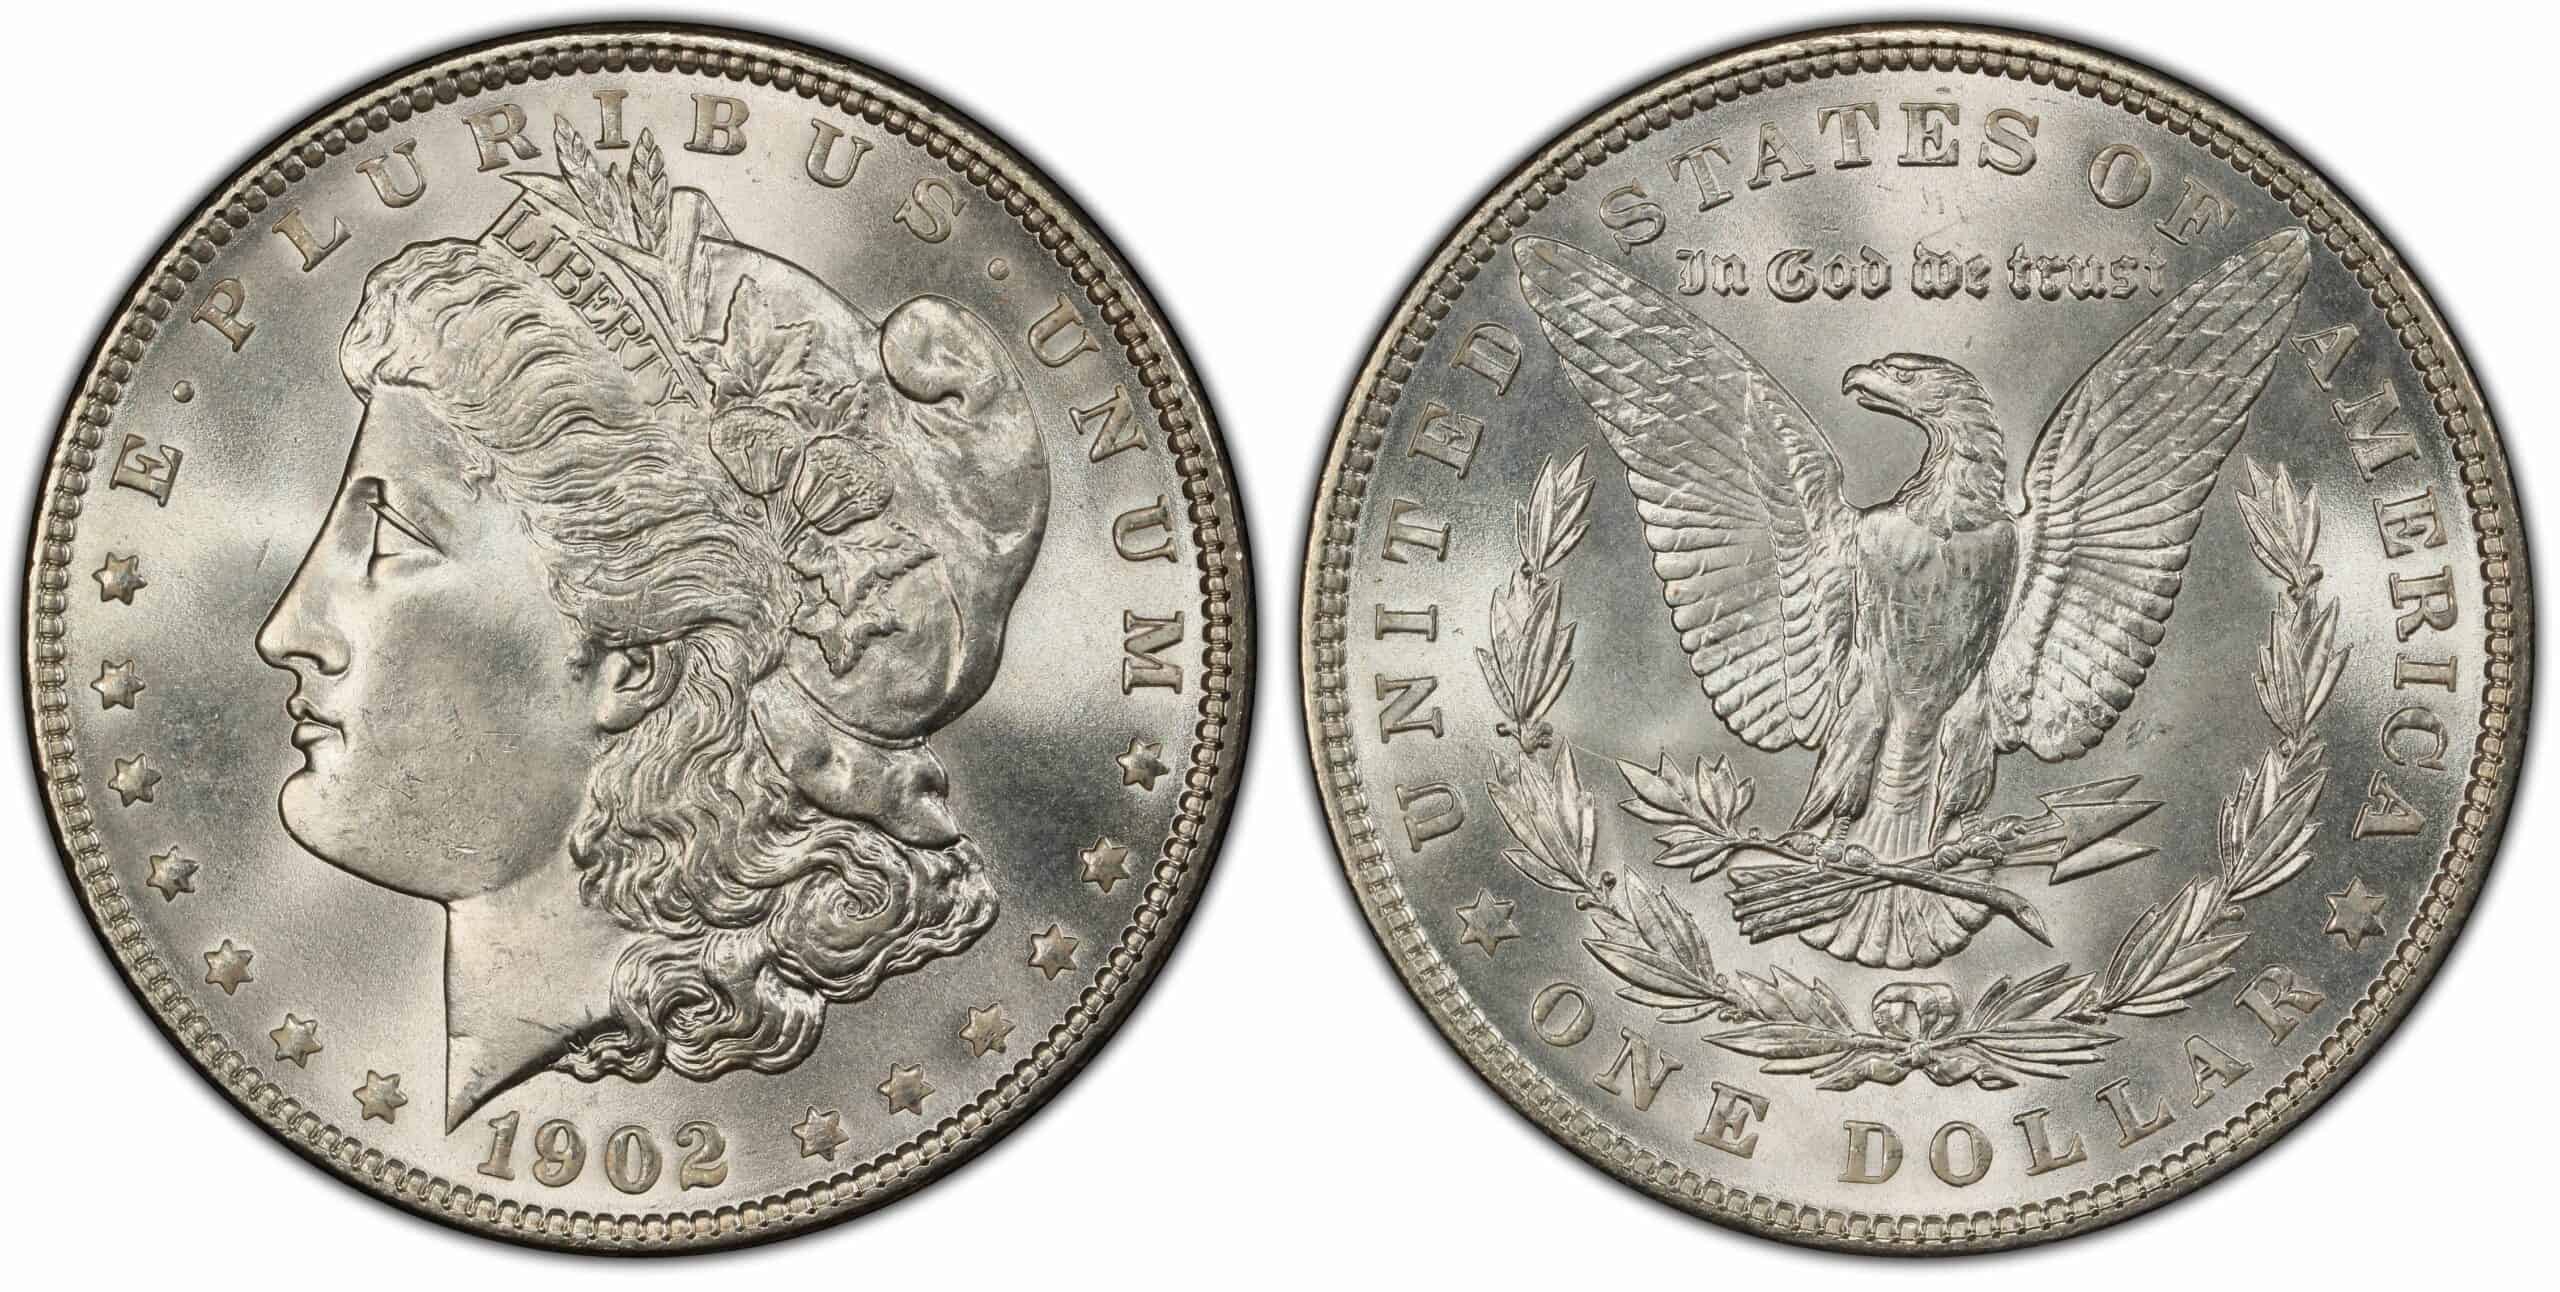 1902 silver dollar value